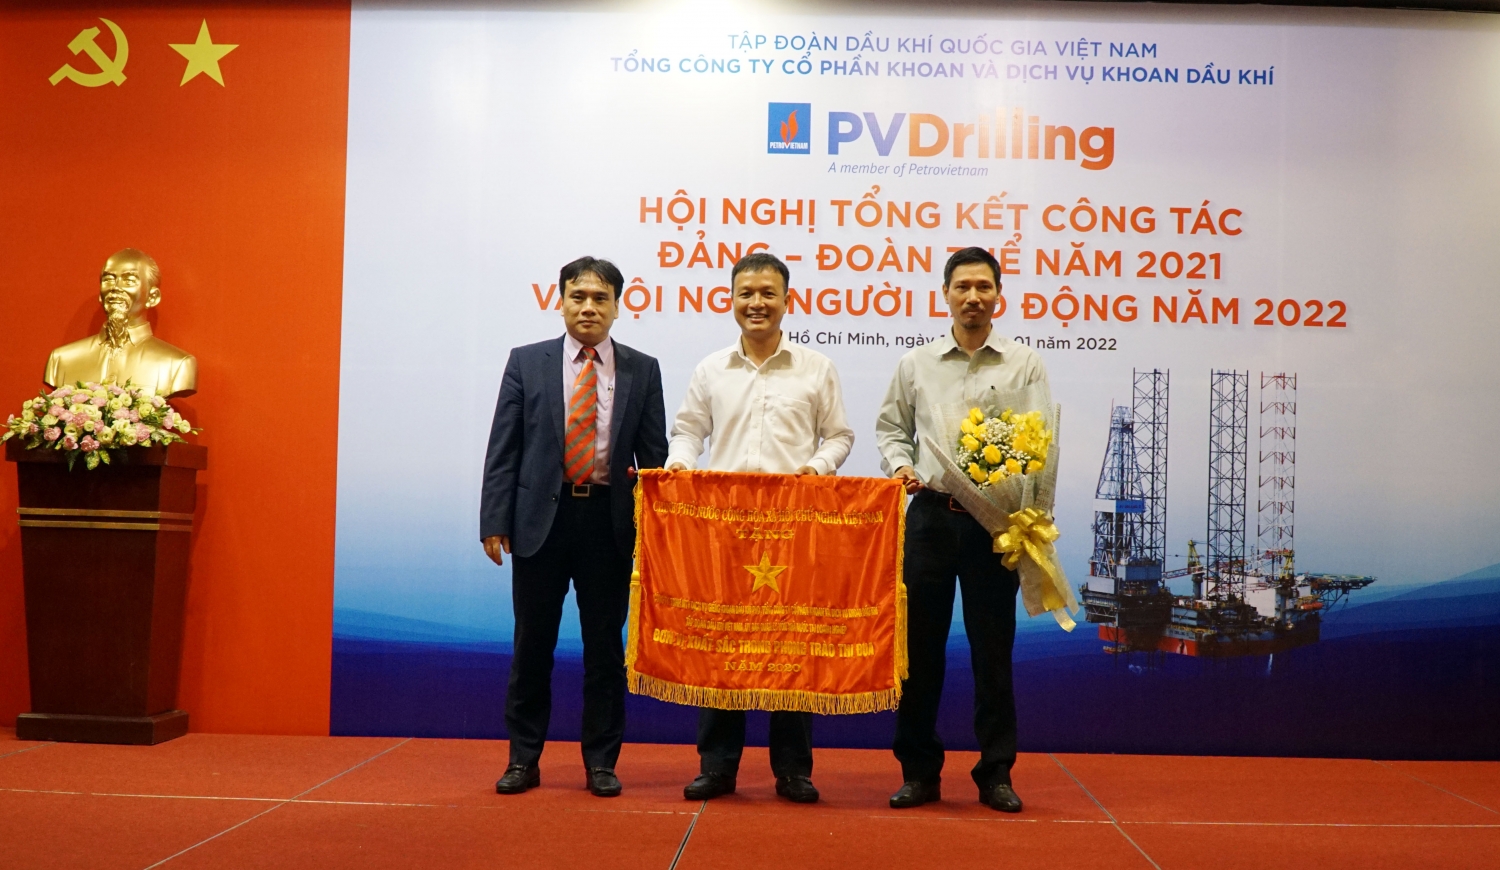 Tổng giám đốc Nguyễn Xuân Cường trao tặng Cờ thi đua cho PVD Well Services.